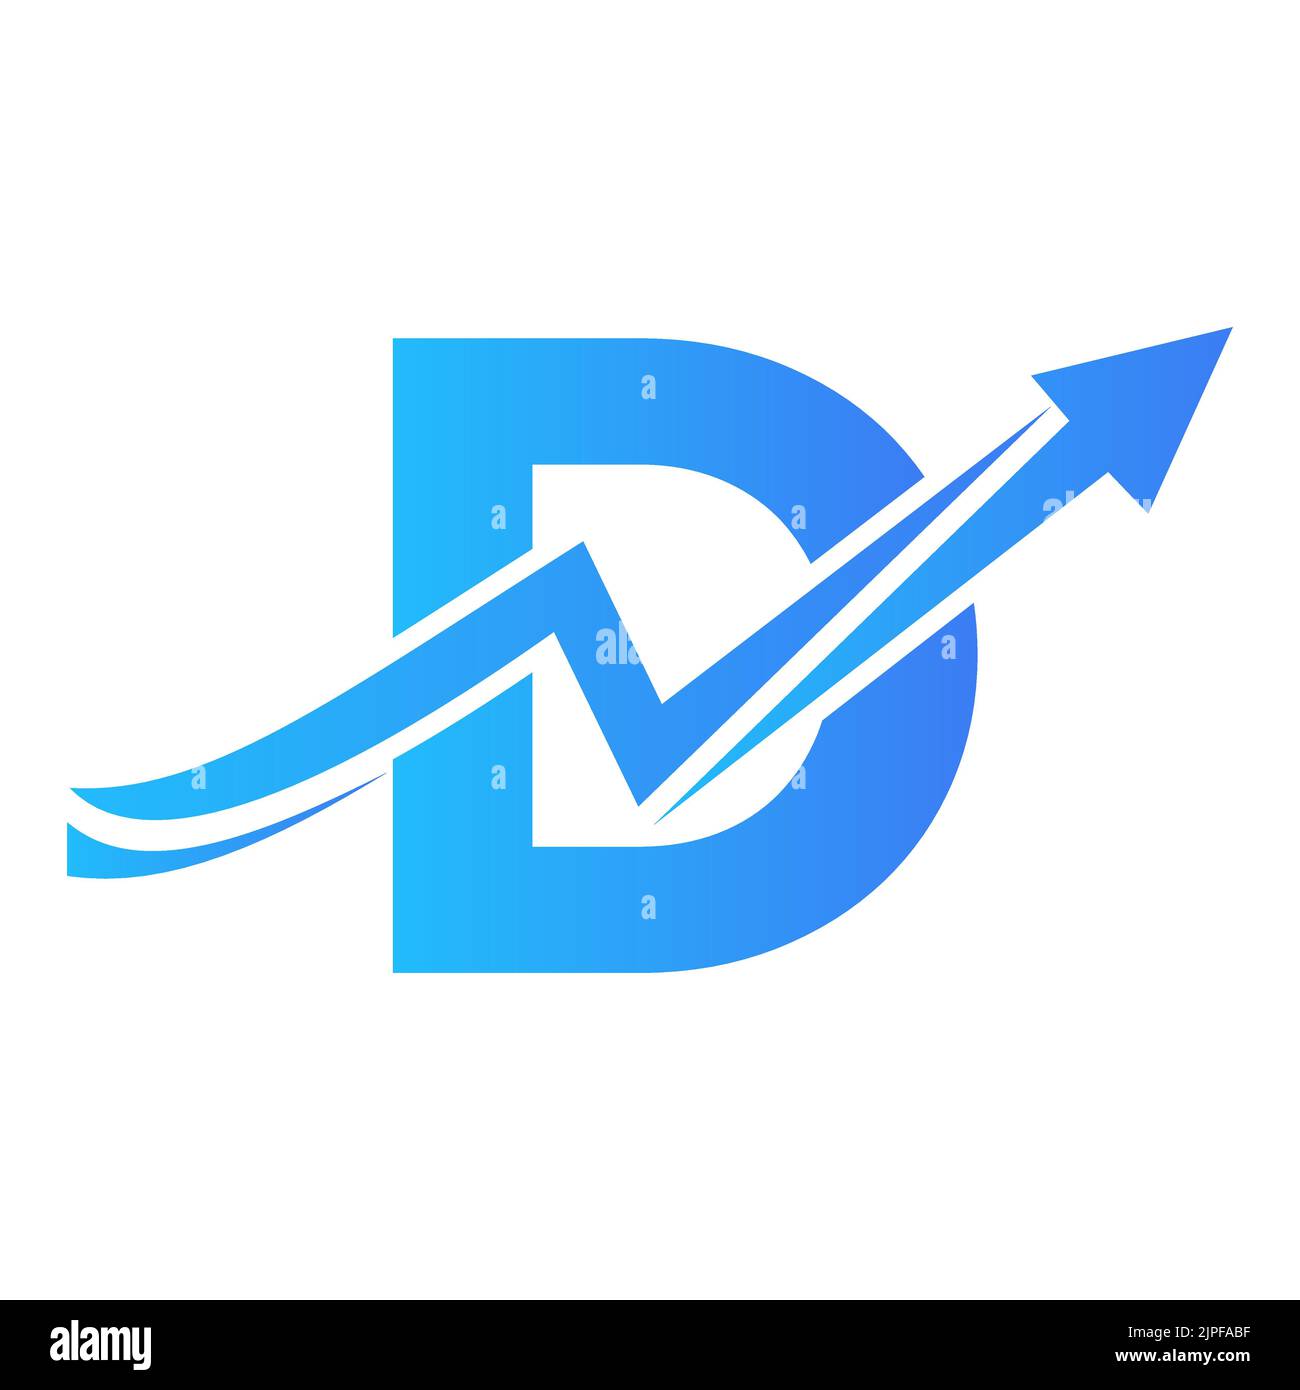 Lettre D logo financier avec flèche de croissance. Logo économique Sign On Alphabet D Vector Template Illustration de Vecteur